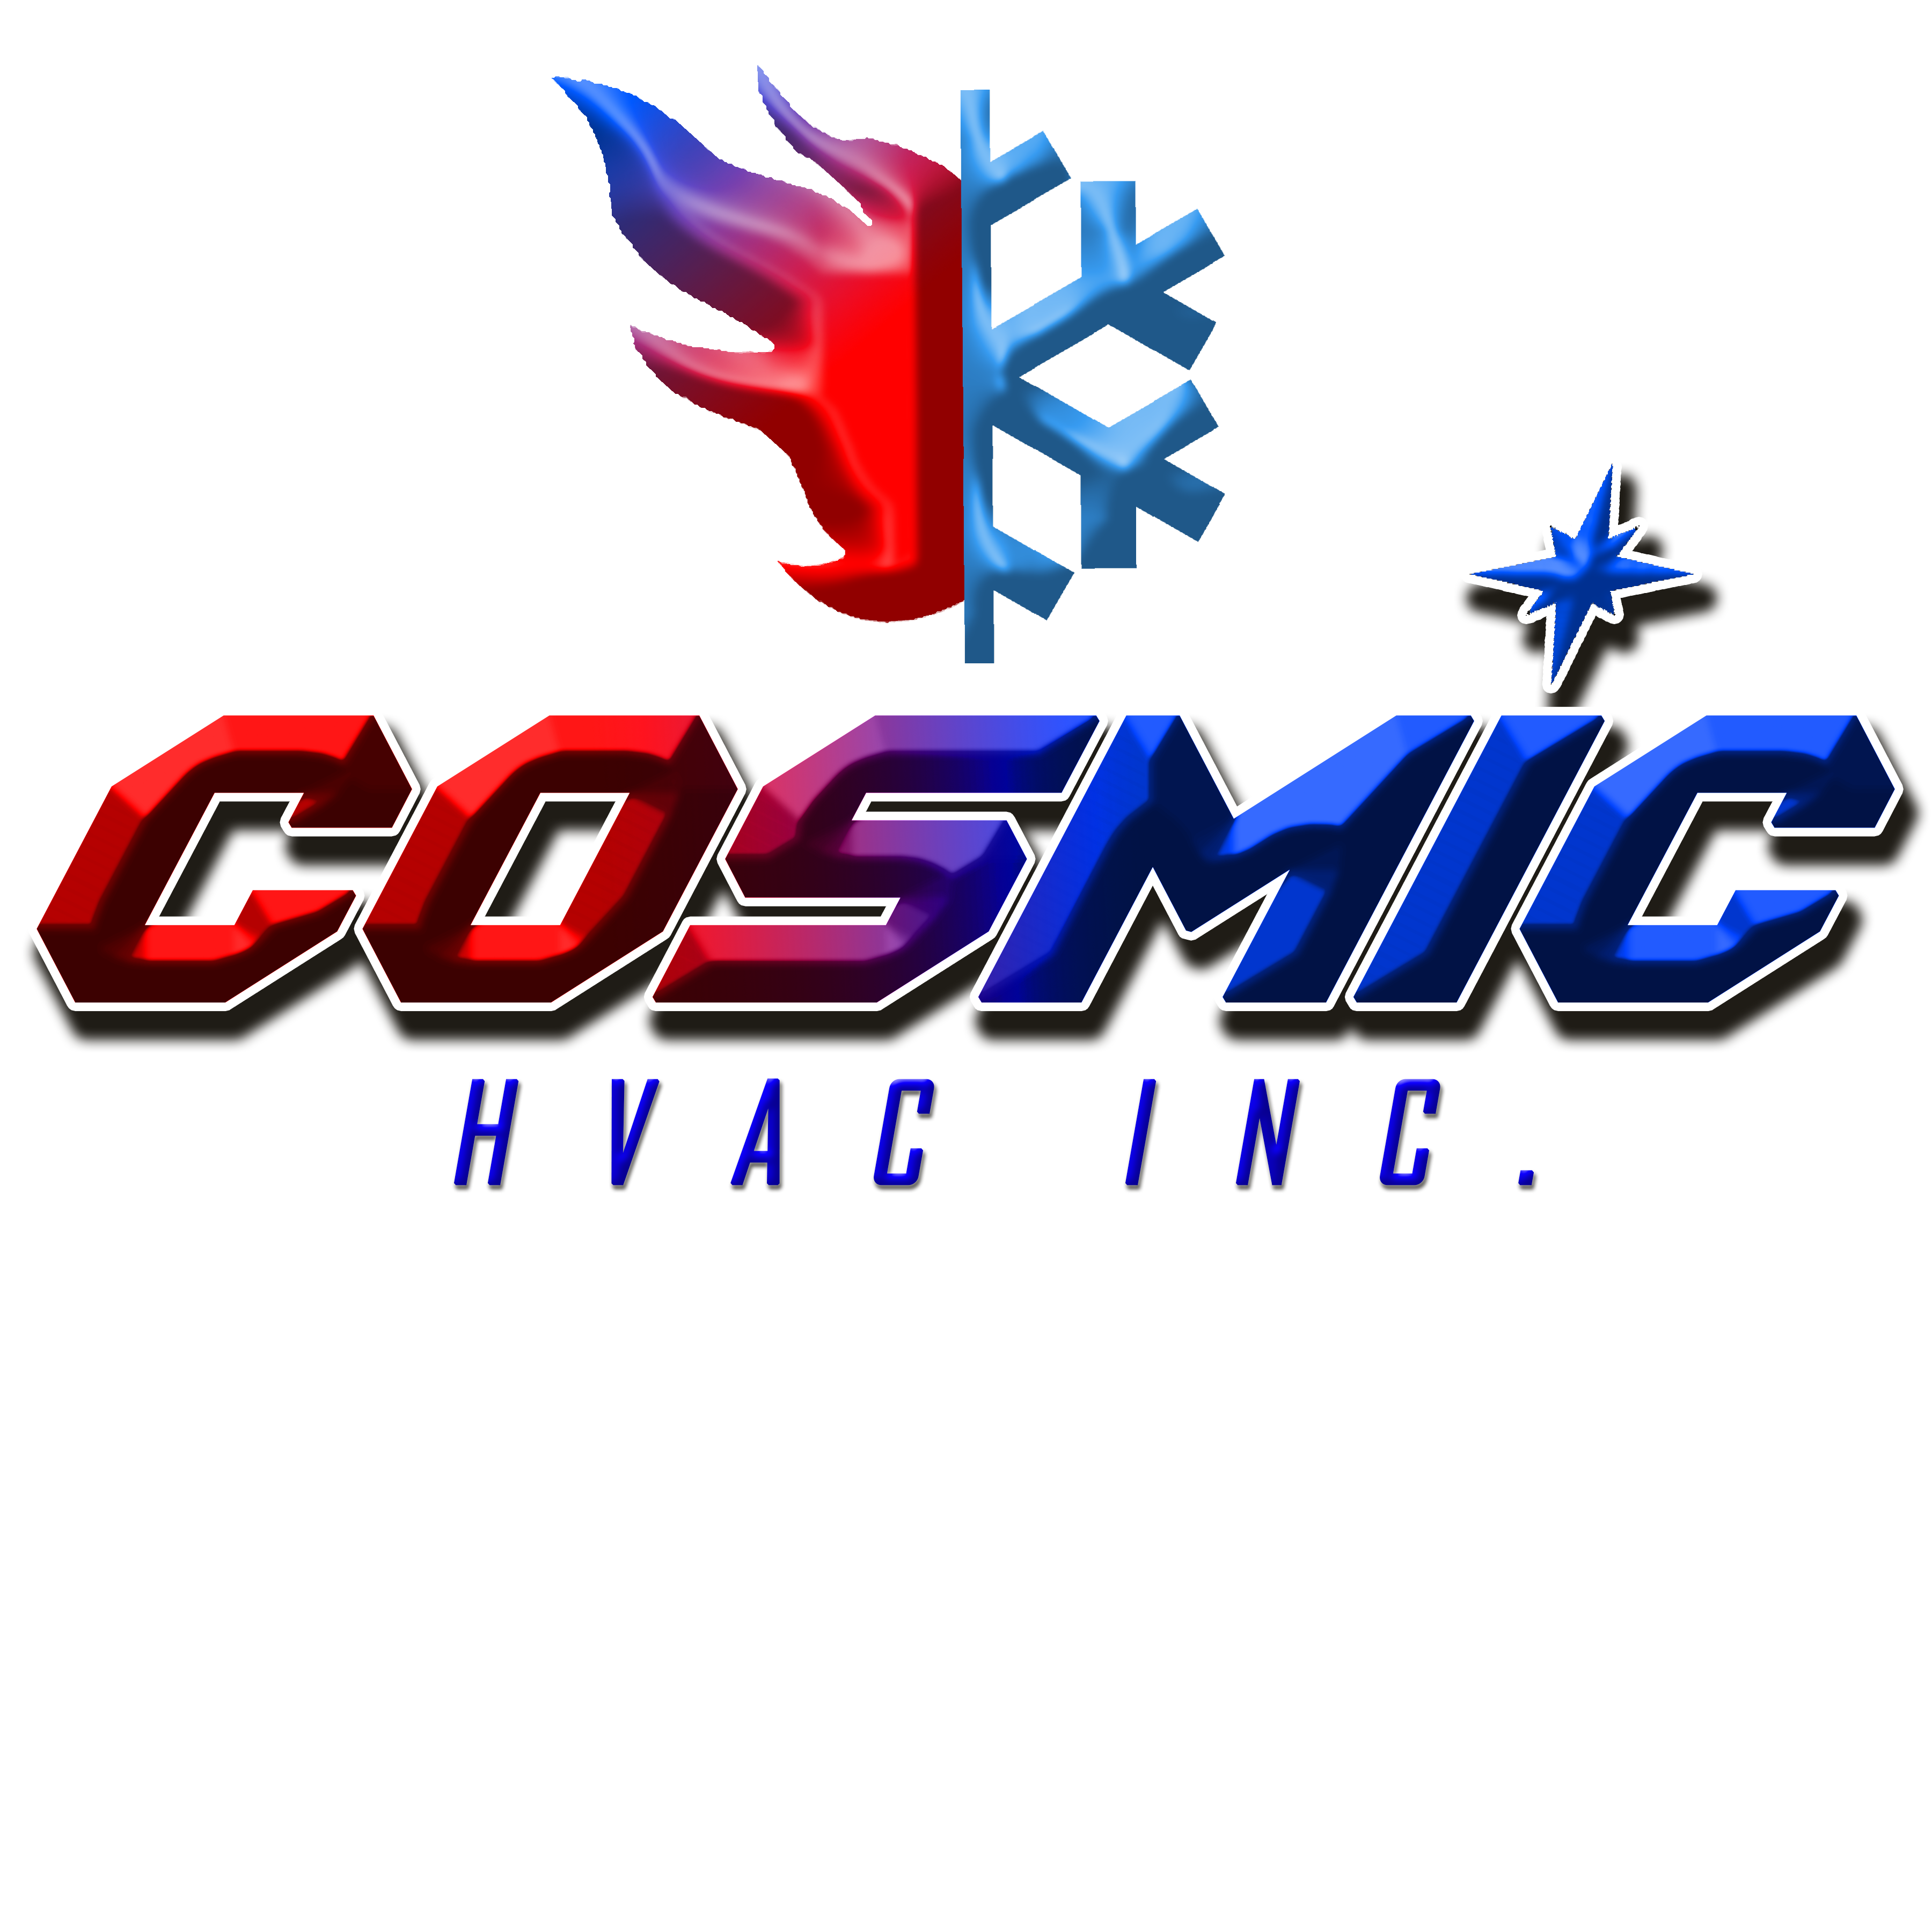 Cosmic HVAC, Inc. Logo